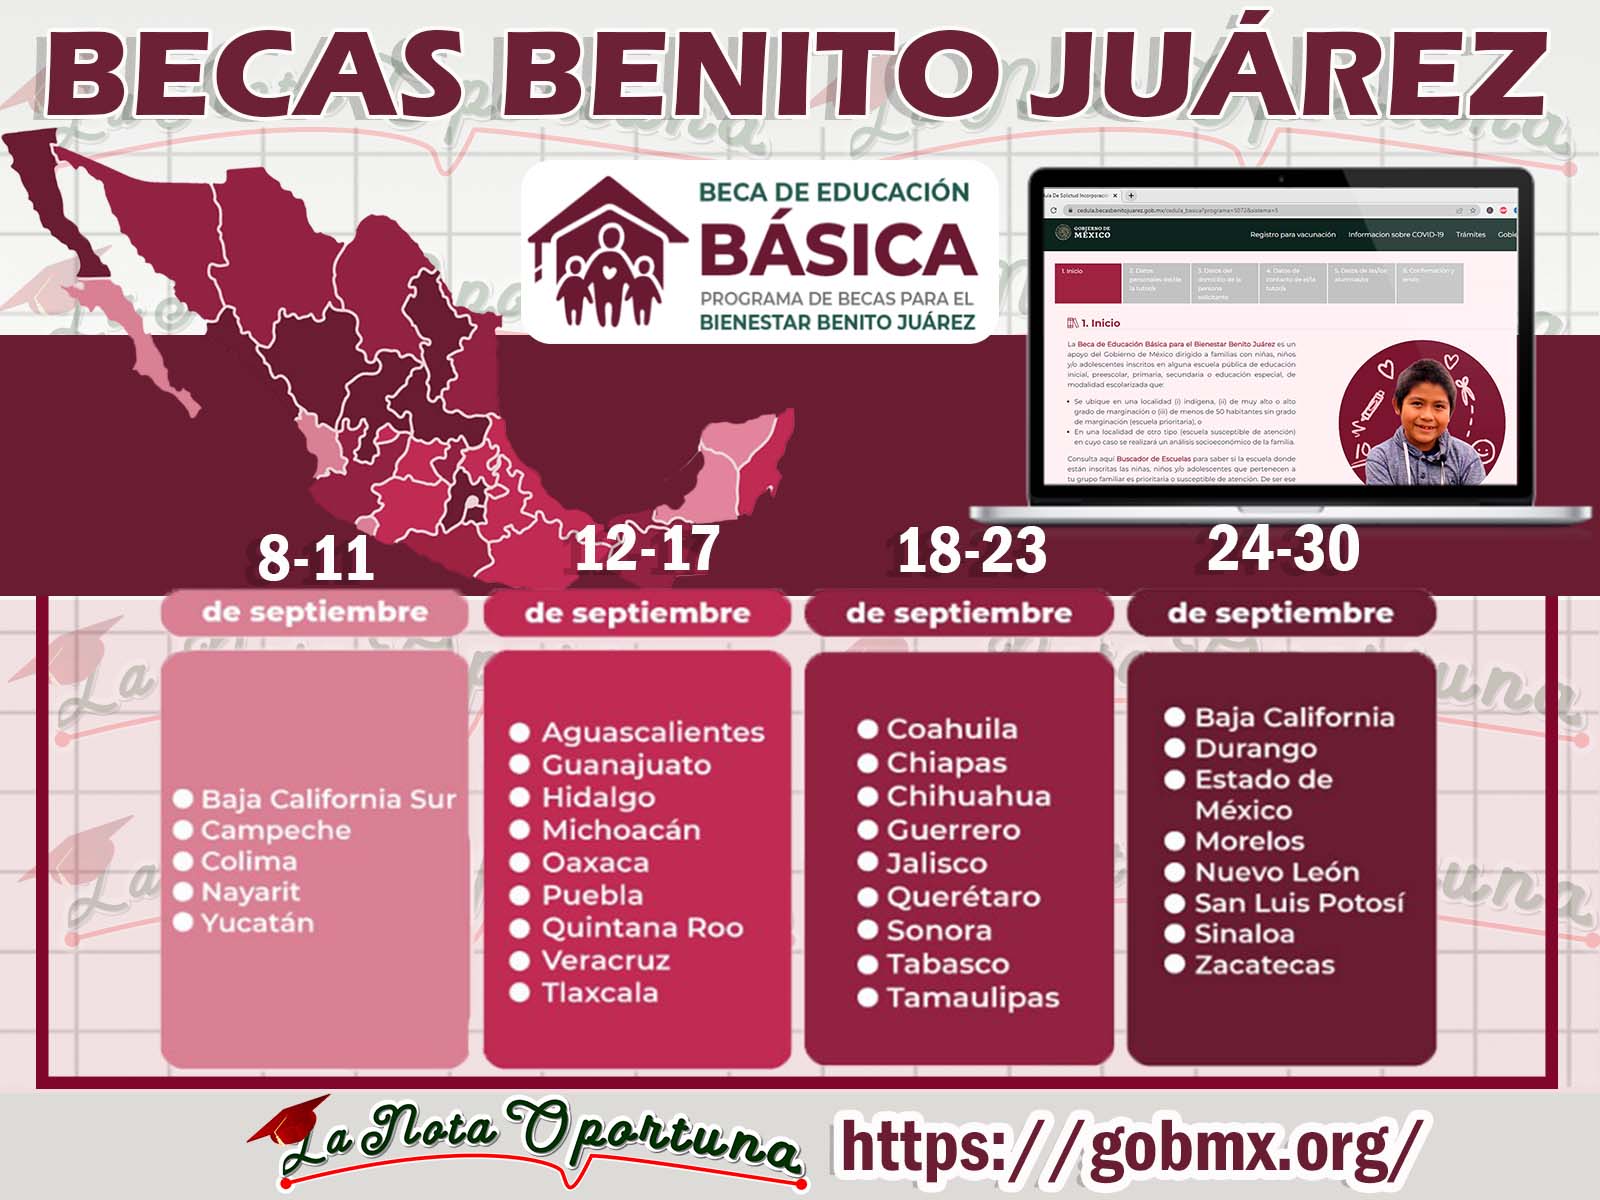 Calendarios de Registro Becas Benito Juárez Nivel Básico ¡Cédula de Solicitud de Incorporación y Cédula Única!